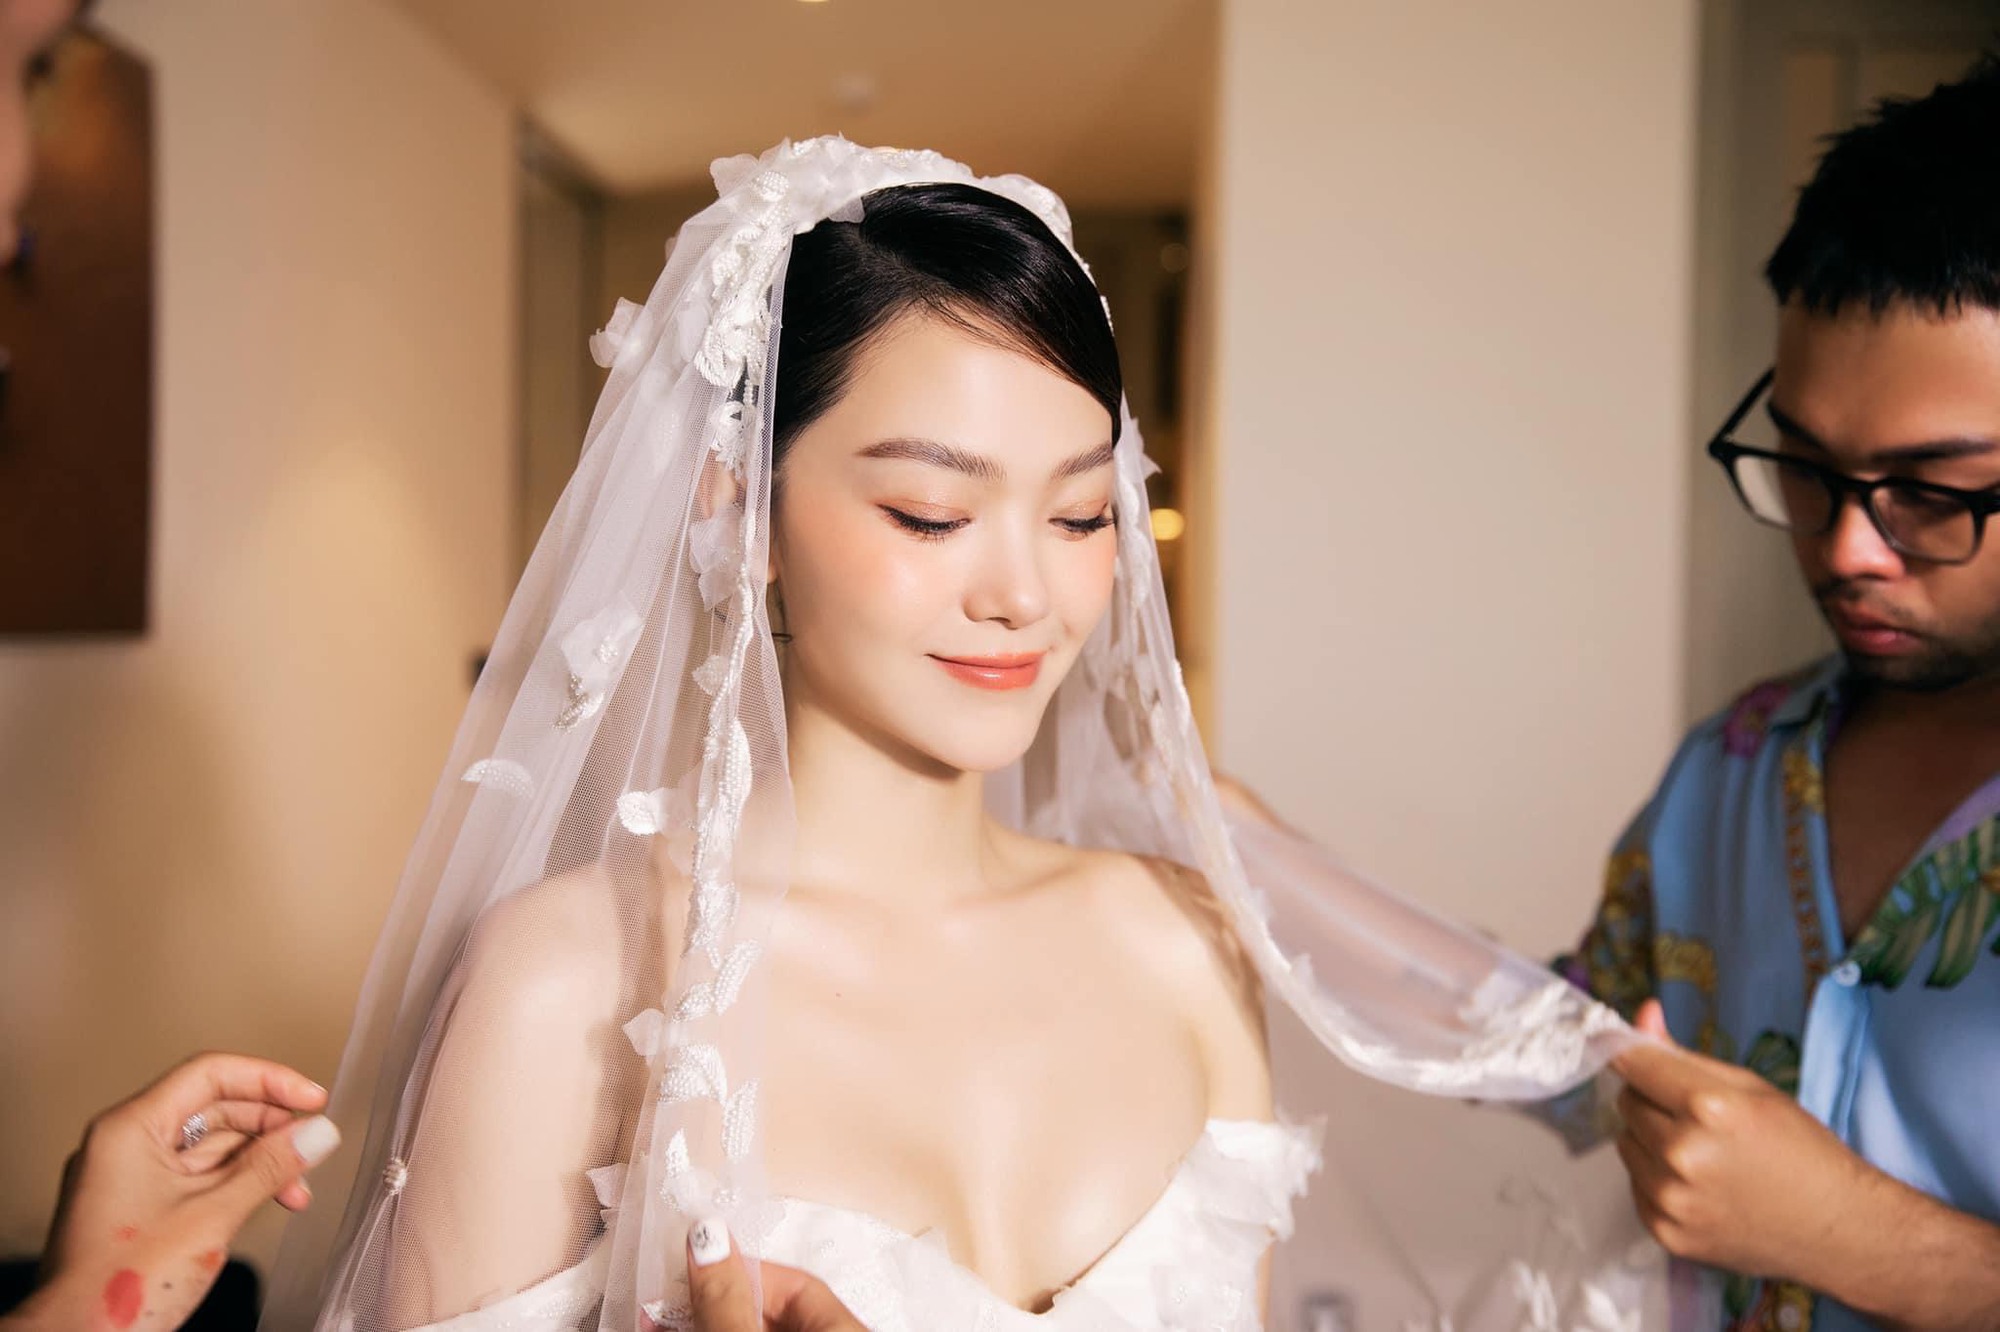 Hậu đám cưới, Minh Hằng tiết lộ lý do chi đến hàng tỷ đồng để chăm sóc sắc đẹp - Ảnh 1.